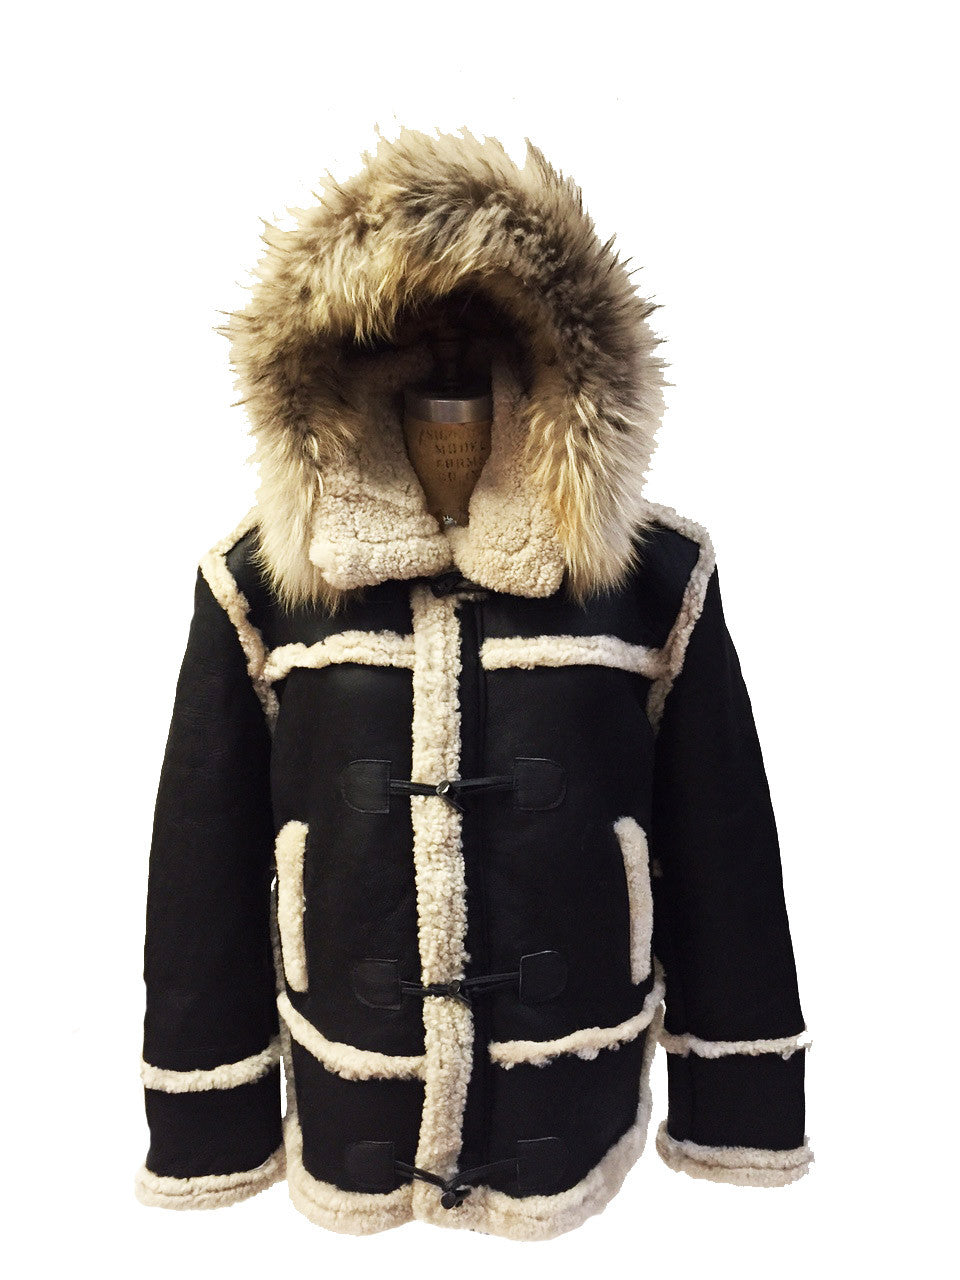 Jakewood - 4700 Sheepskin Marlboro Style Shearling Jacket - Dudes Boutique